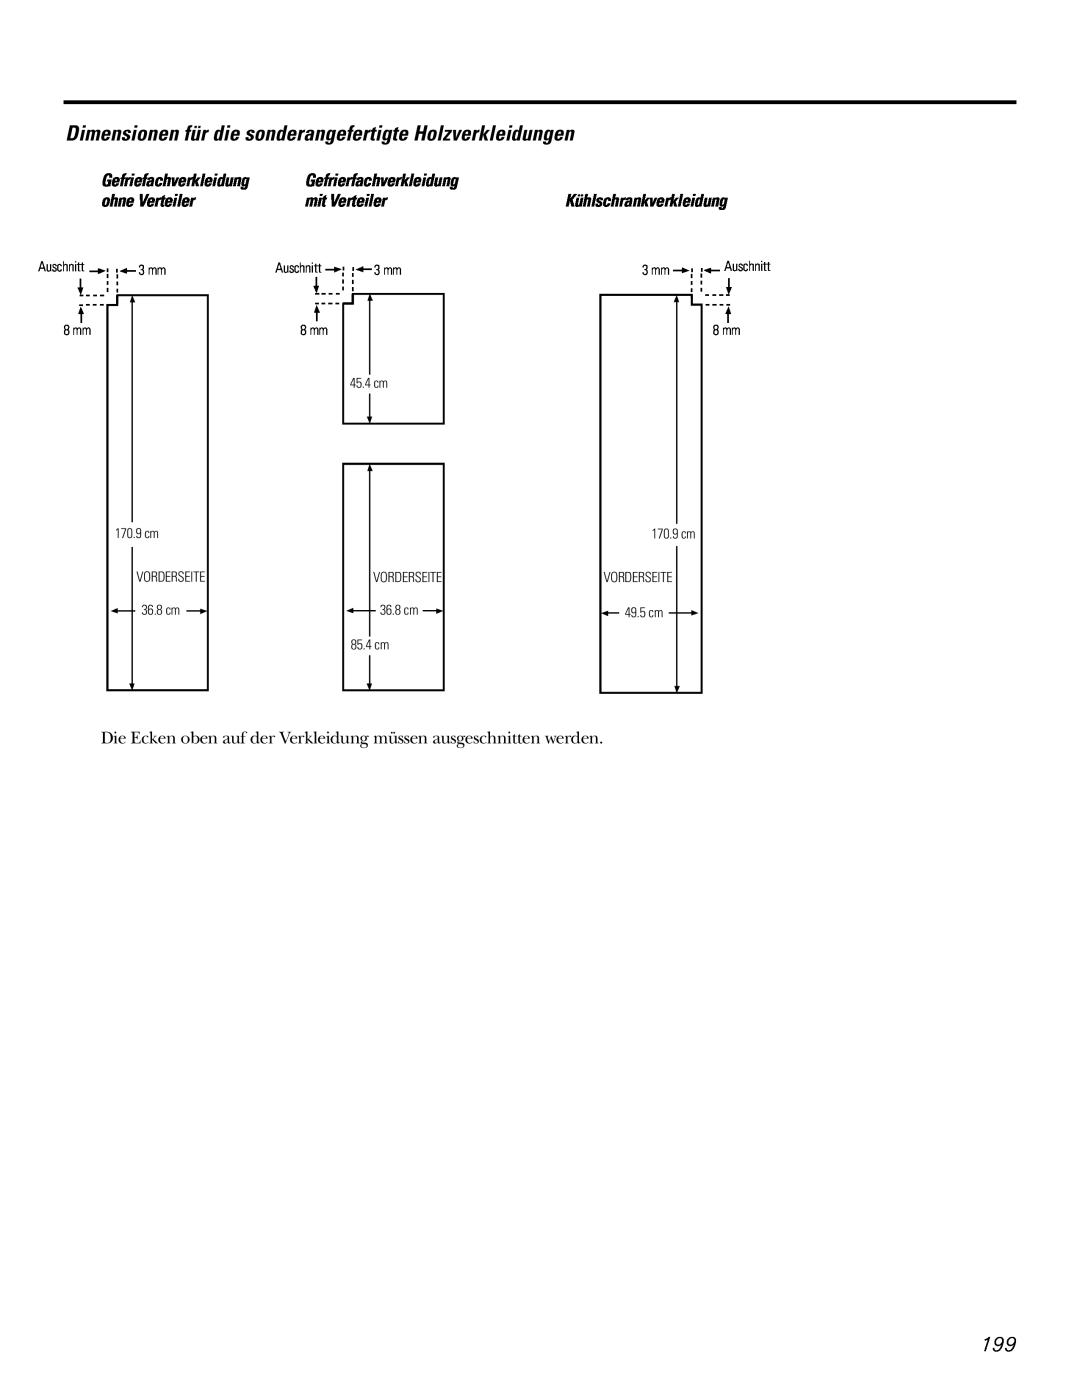 GE 200D2600P031 Dimensionen für die sonderangefertigte Holzverkleidungen, 3 mm, 8 mm, Vorderseite, 85.4 cm, Auschnitt 